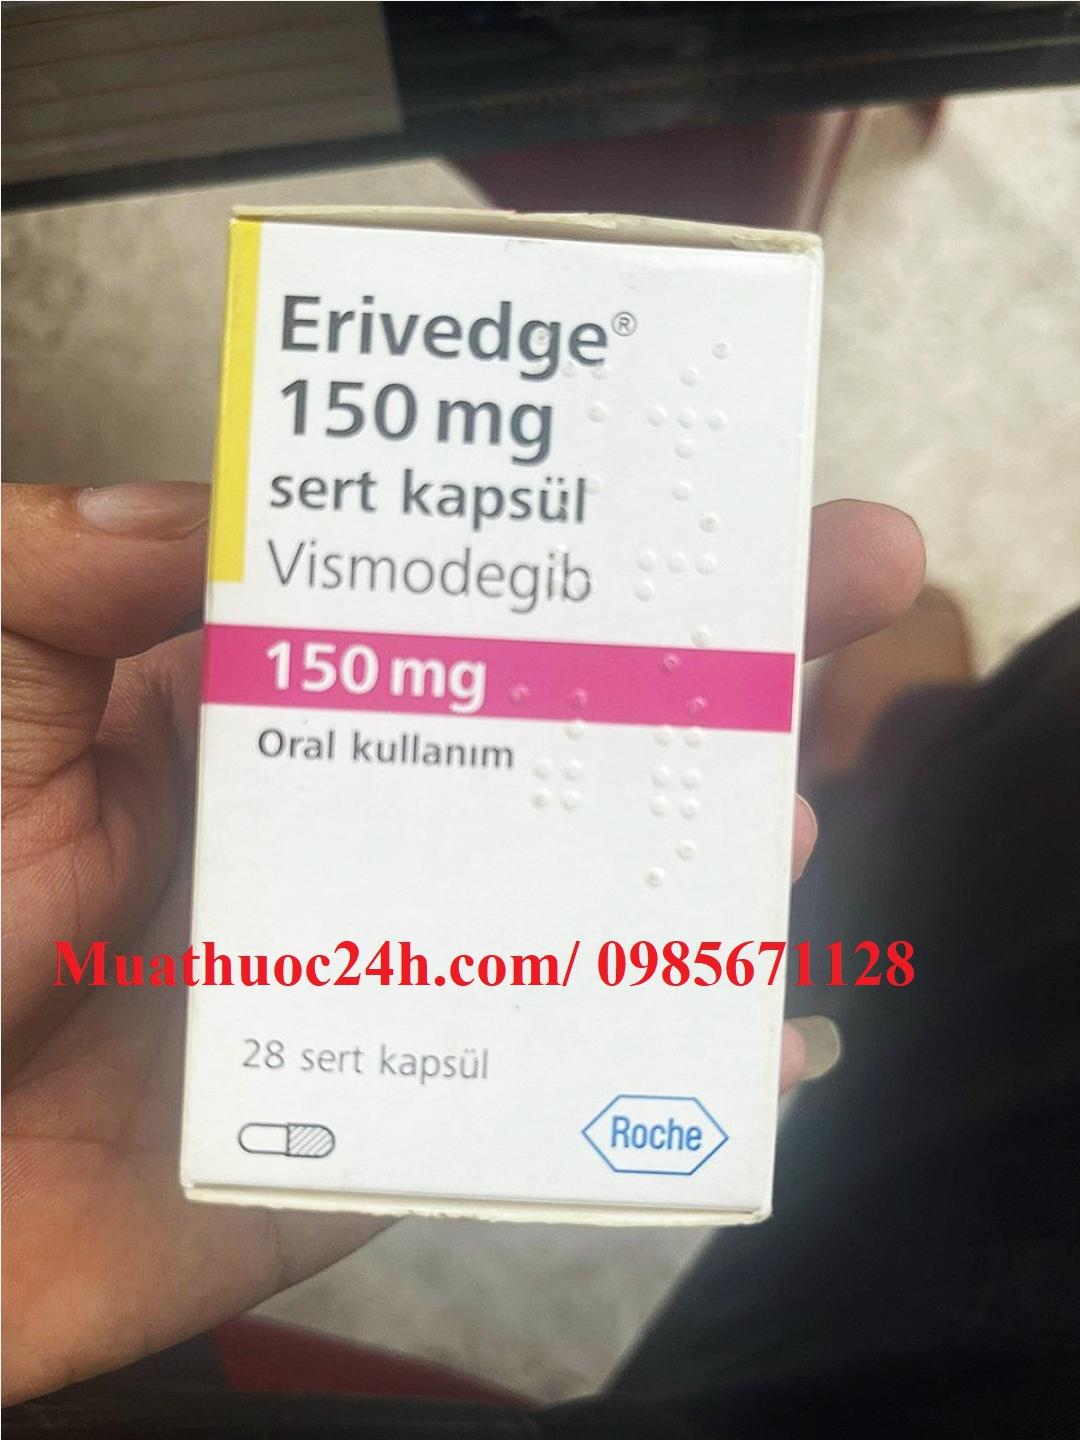 Thuốc Erivedge 150mg Vismodegib giá bao nhiêu mua ở đâu?